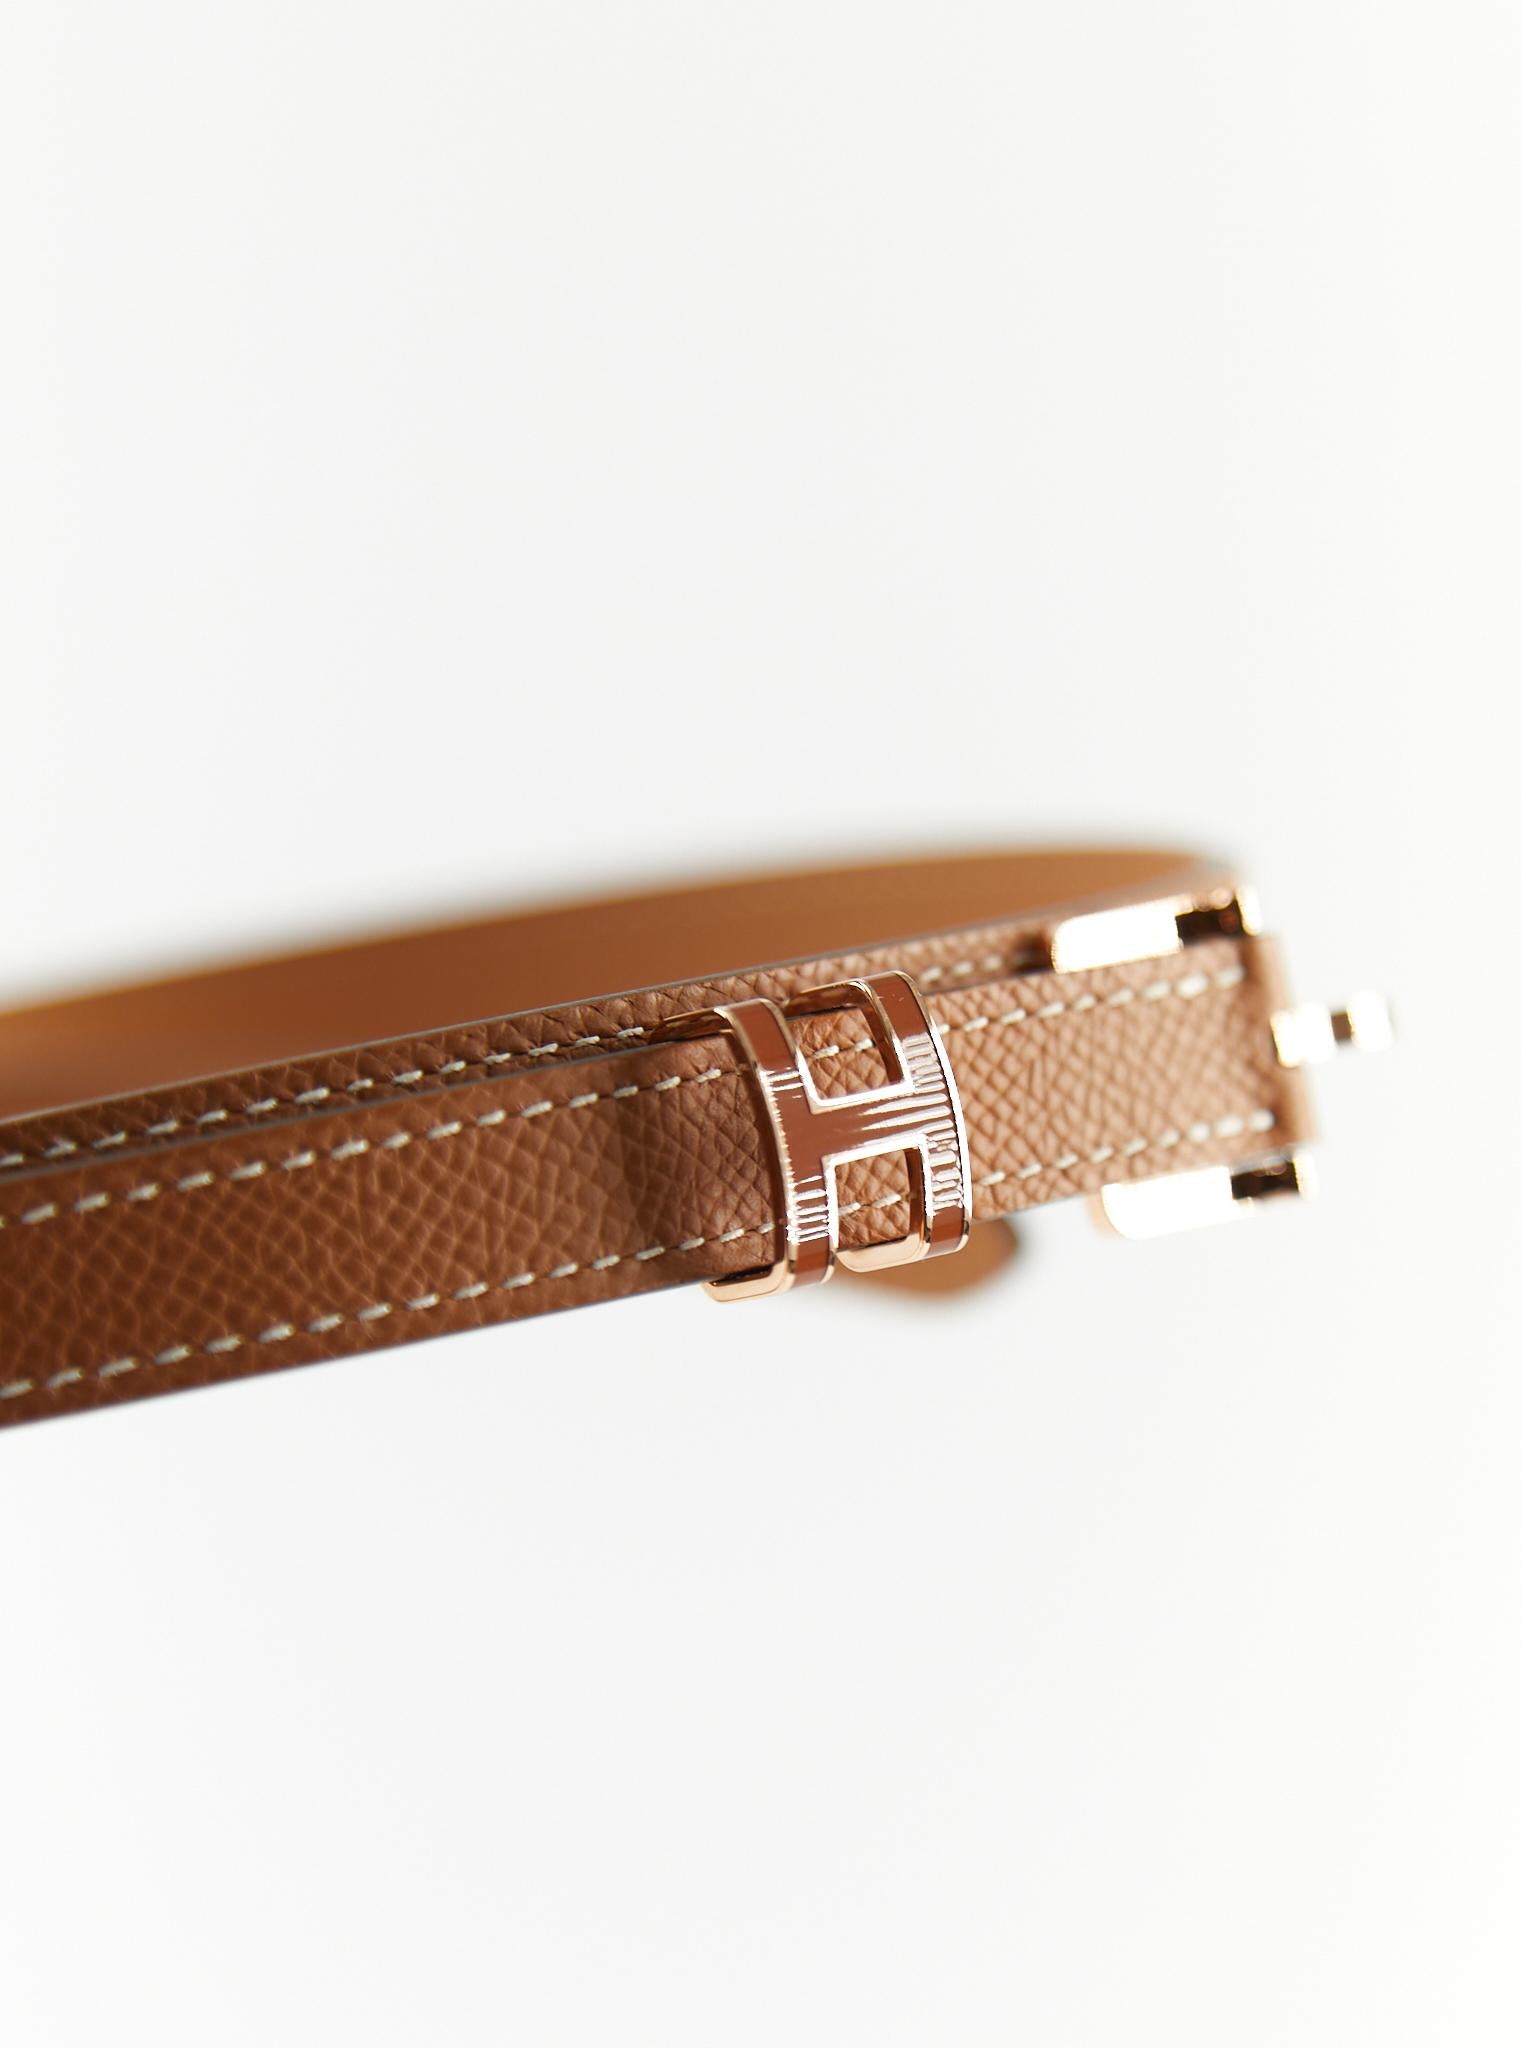 Hermès Pop H 15 Gürtel in Gold

Epsom Leder mit Rose Gold Hardware

Größe: 85cm

Breite: 15 mm